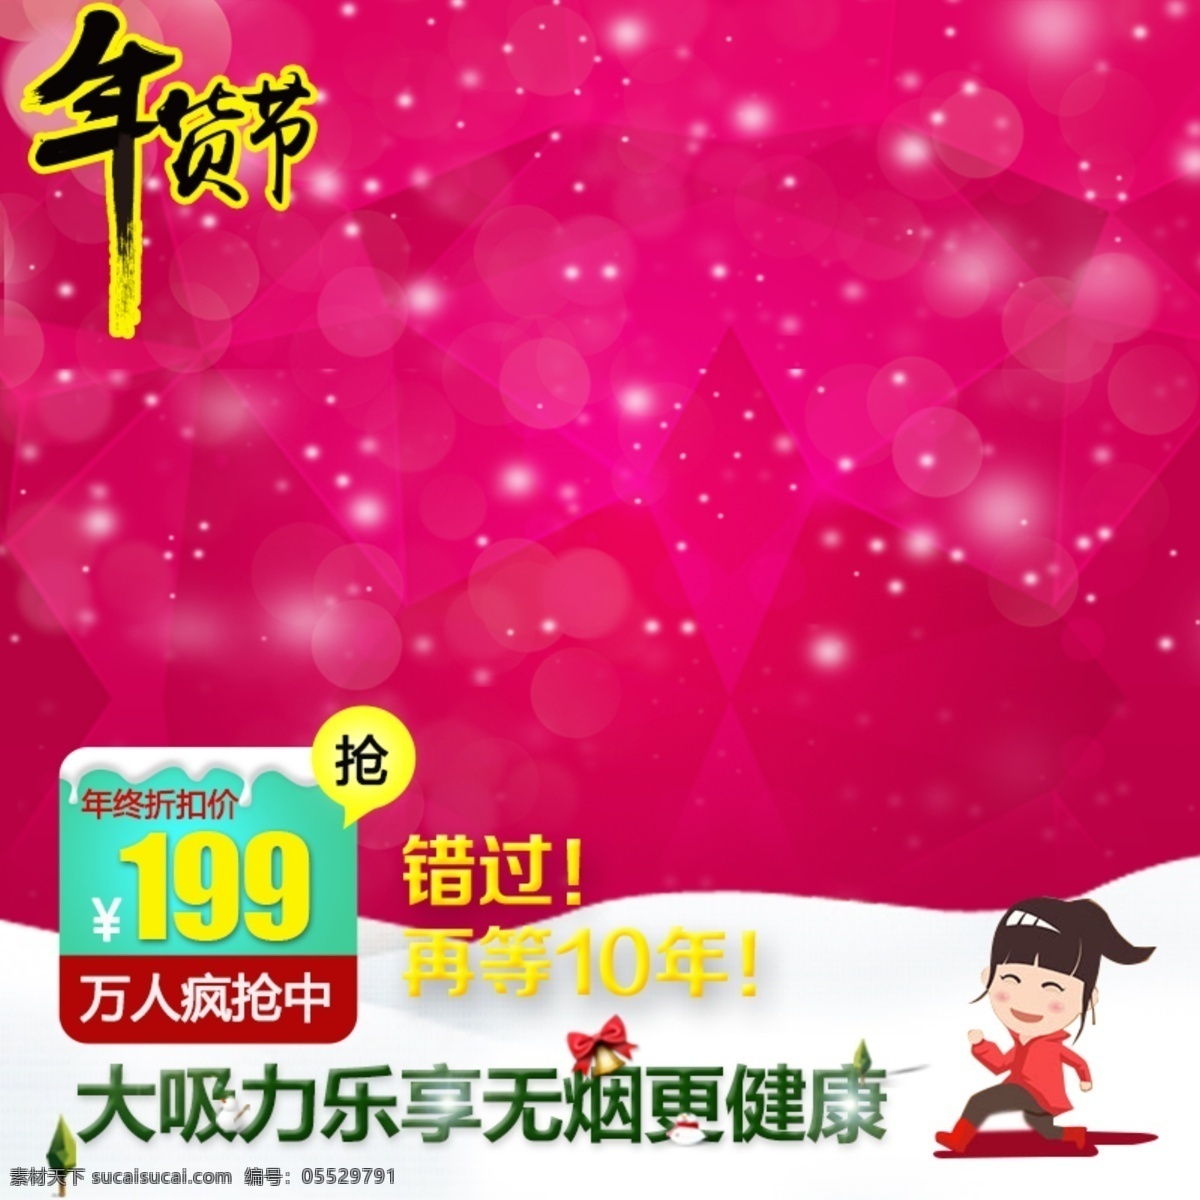 年货节模板 年货节 节日 促销 红色 喜庆